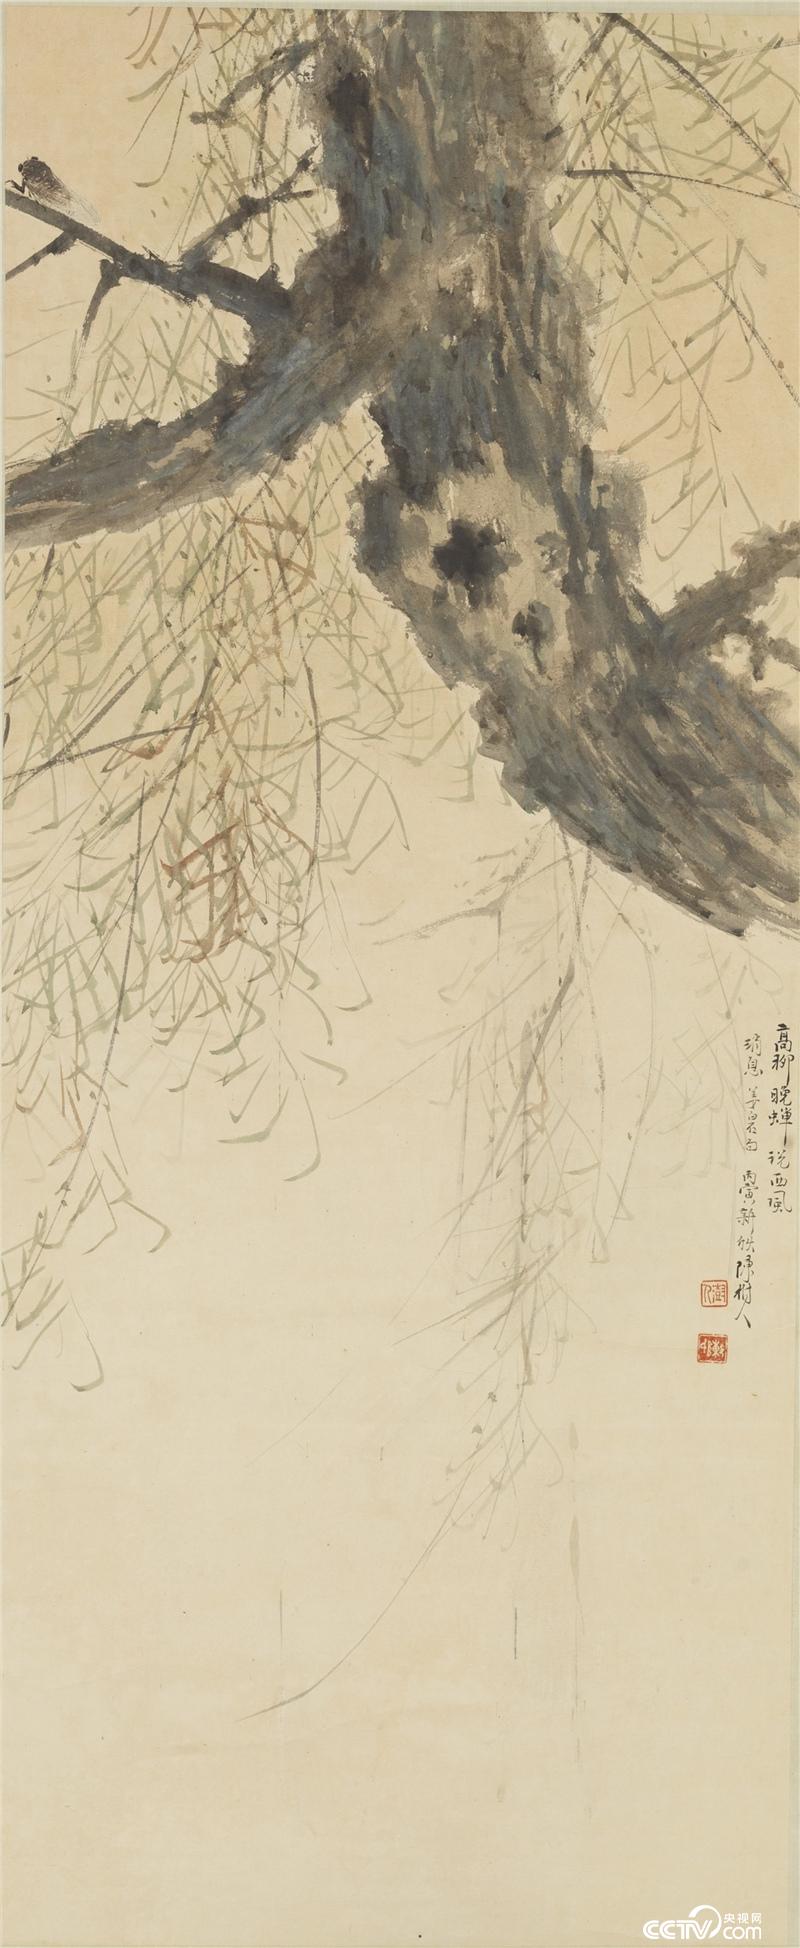 高柳晚蝉  陈树人 1926年 124.9×51cm  纸本设色 